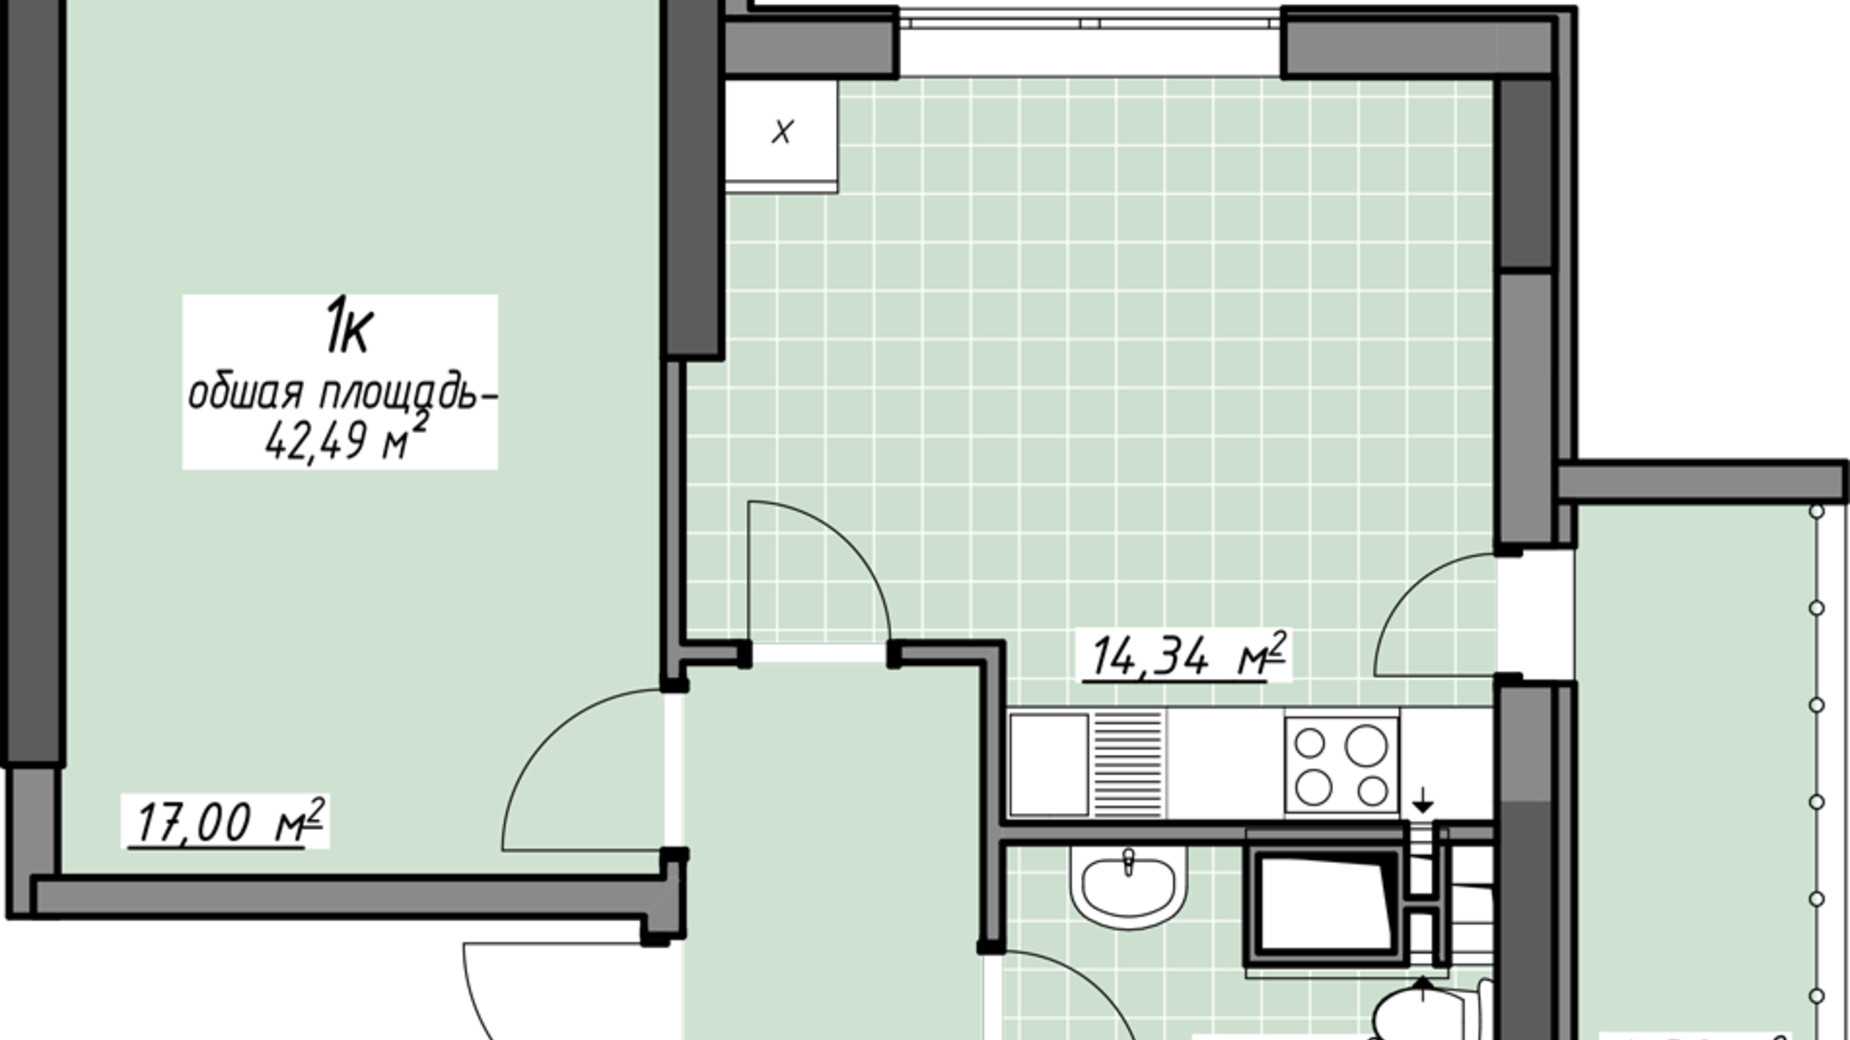 Планування 1-кімнатної квартири в ЖК Одеські традиції на Глушко 42.49 м², фото 580980